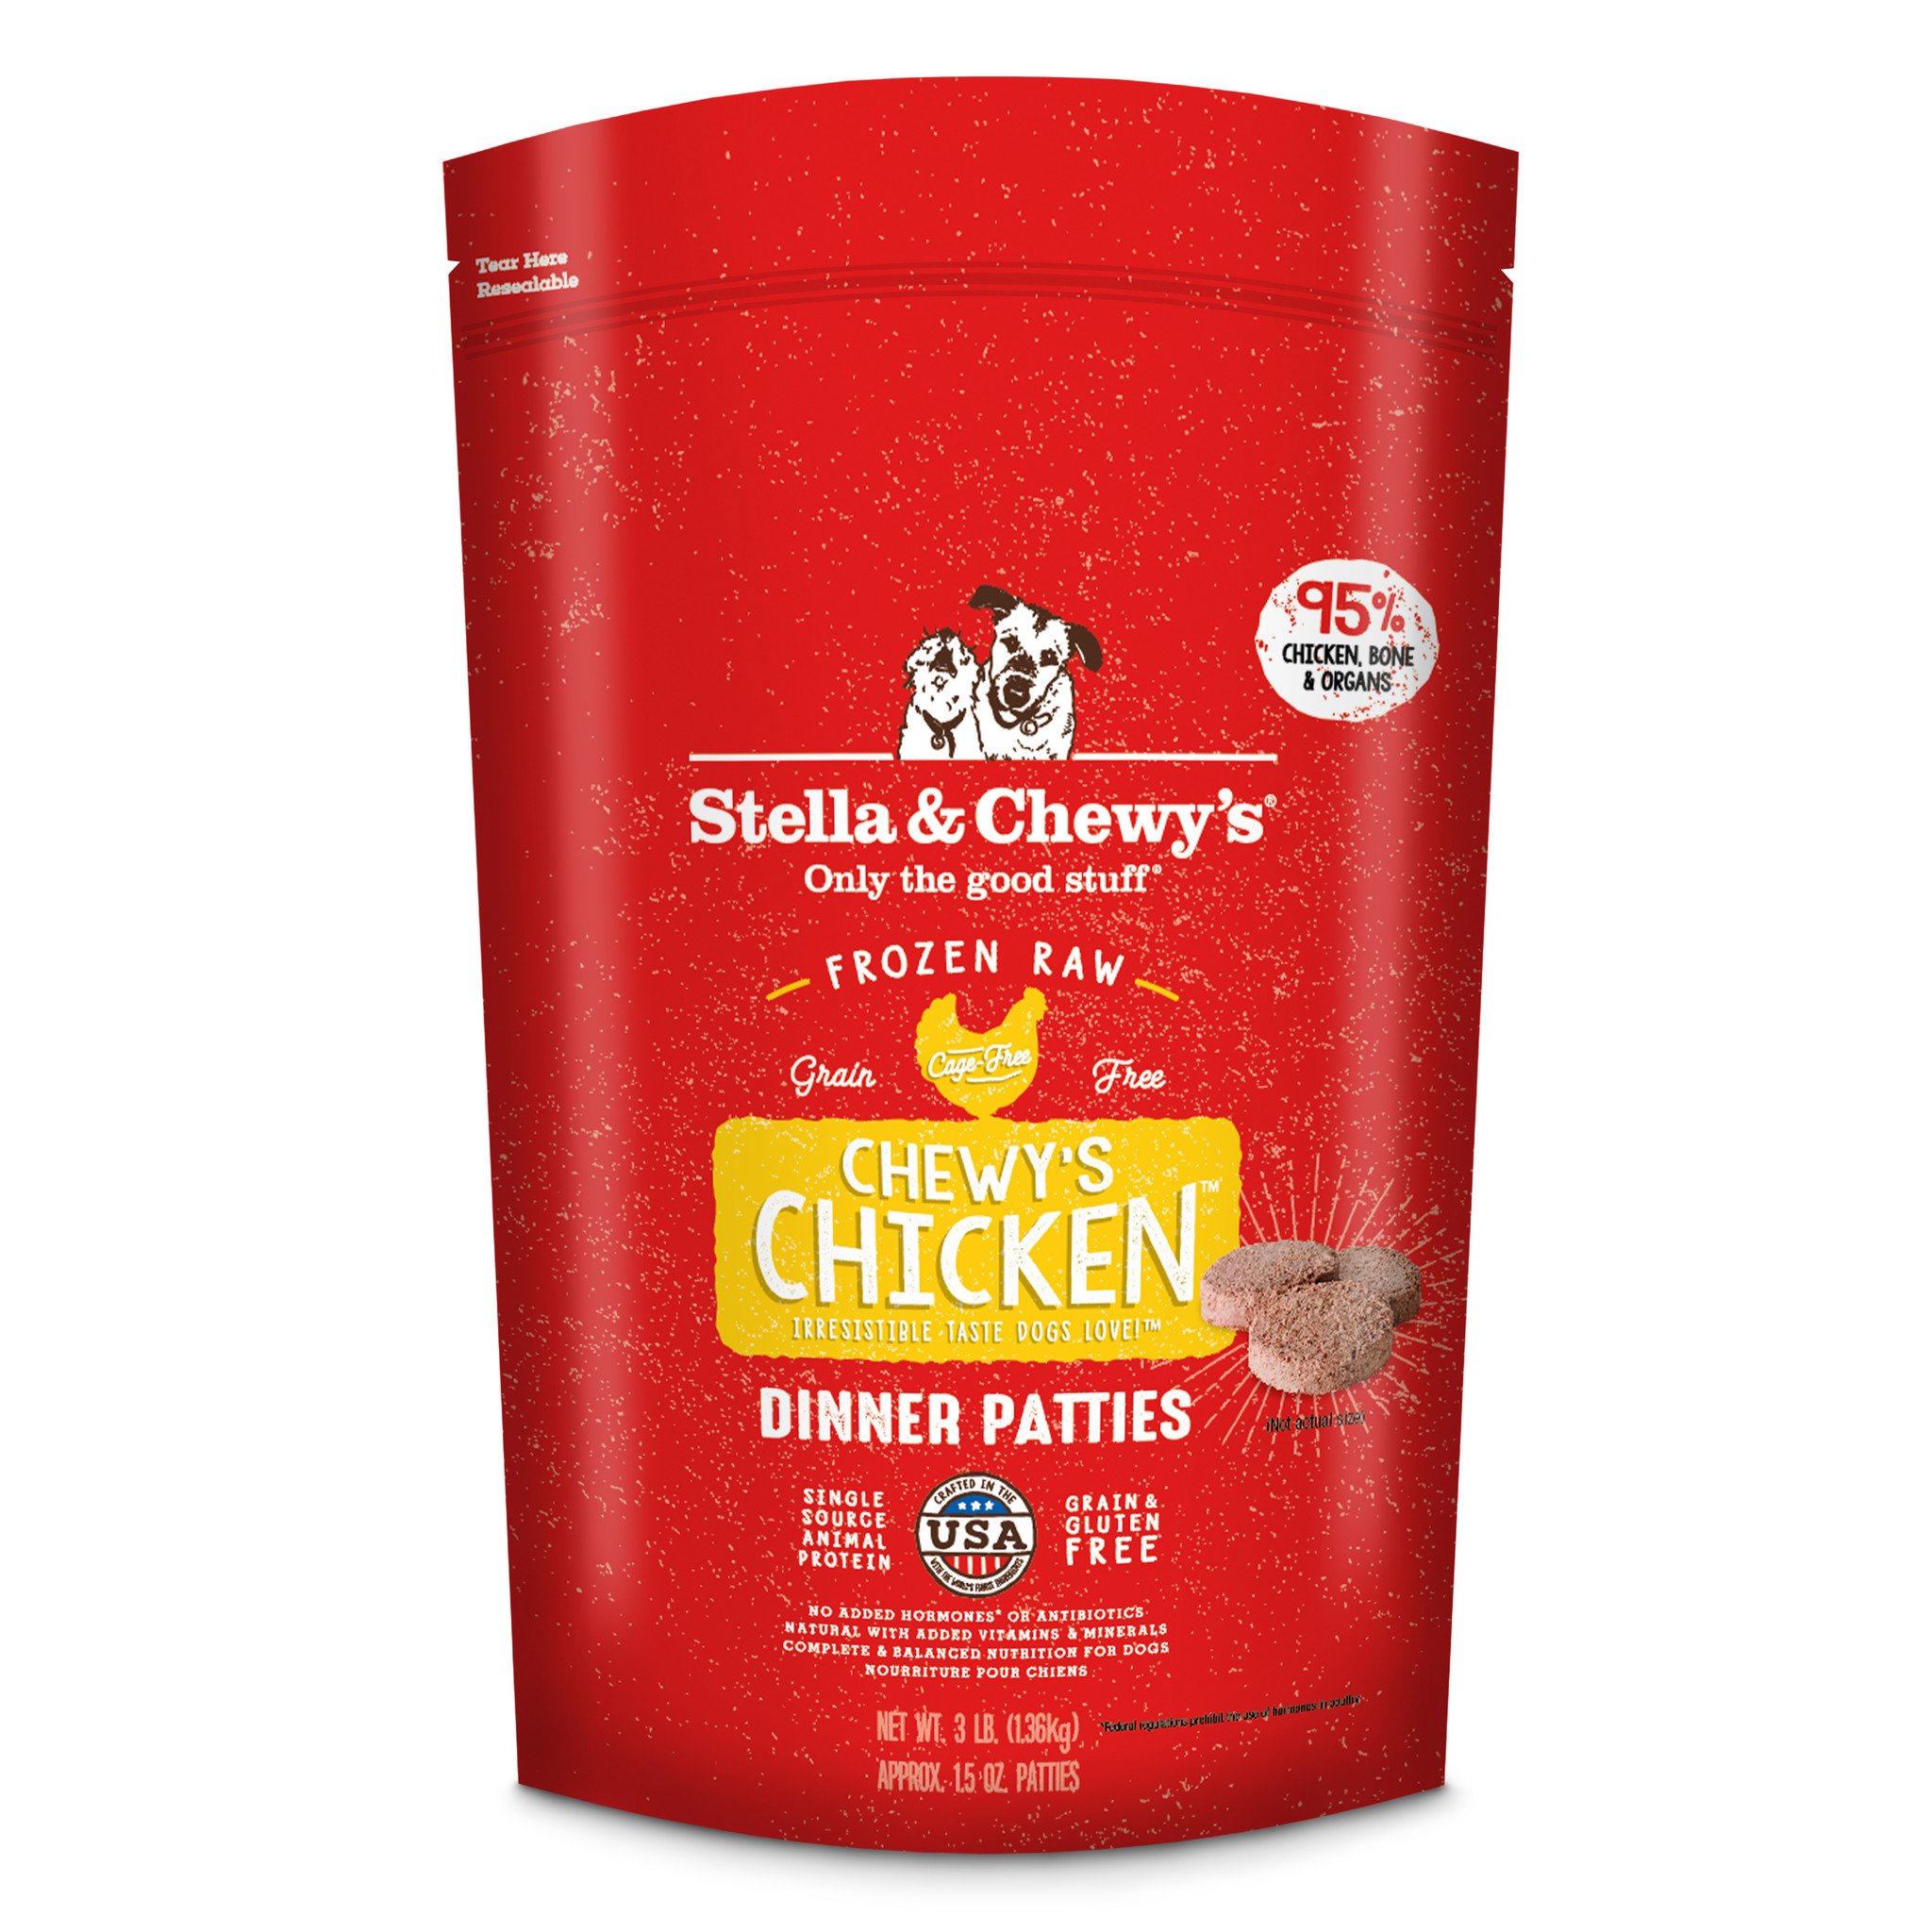 Stella & Chewys Stella & Chewys Chewy's Chicken Frozen Raw Dinner Patties